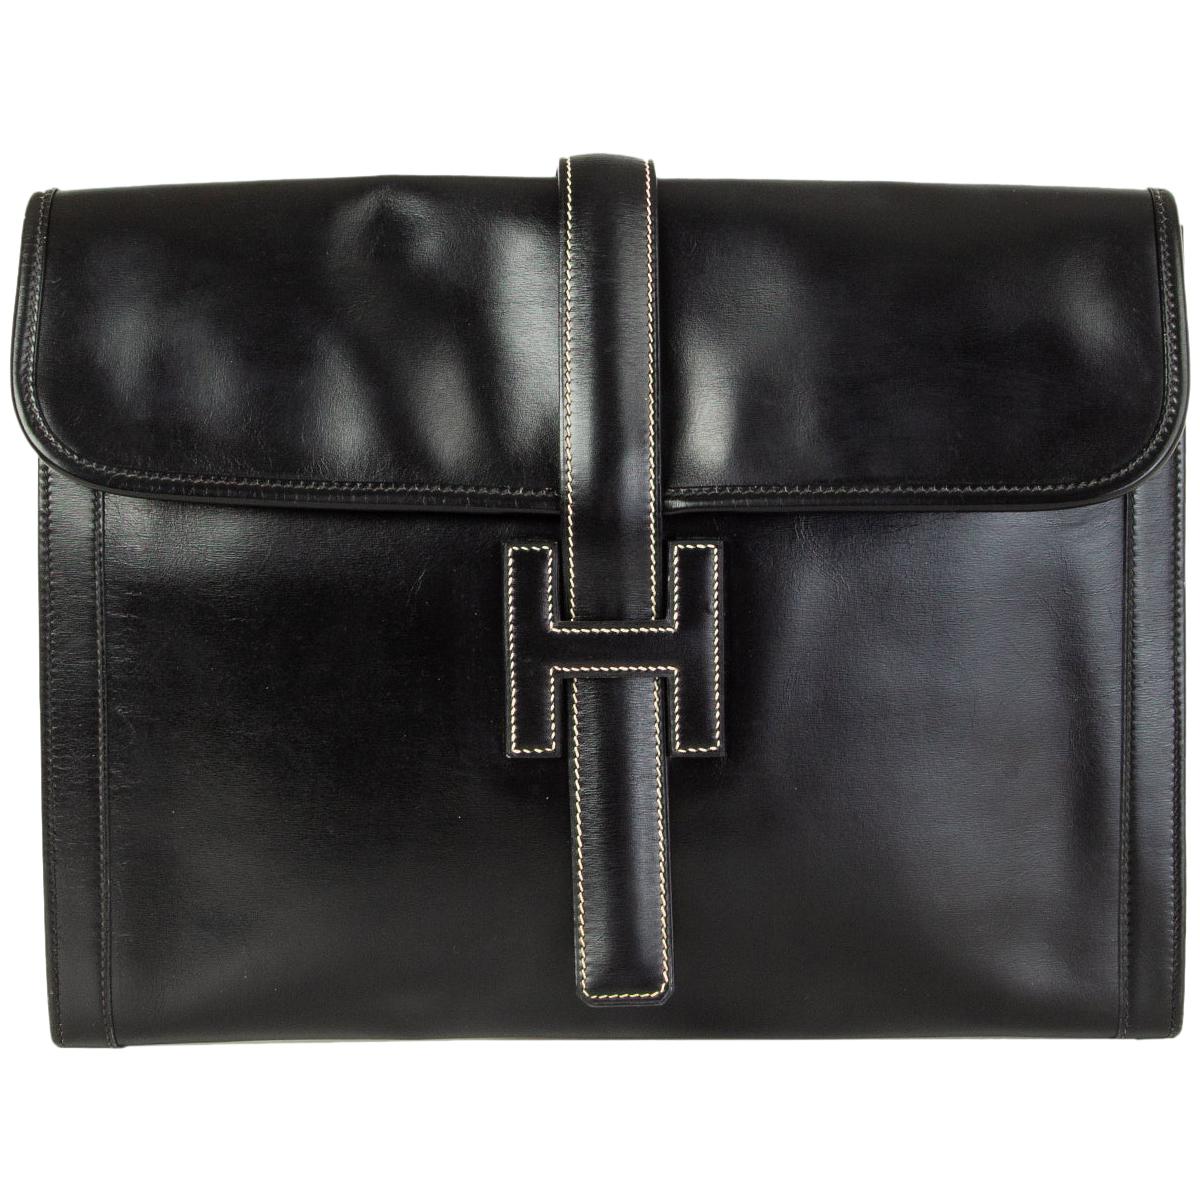 HERMES black Box leather JIGE 34 Clutch Bag